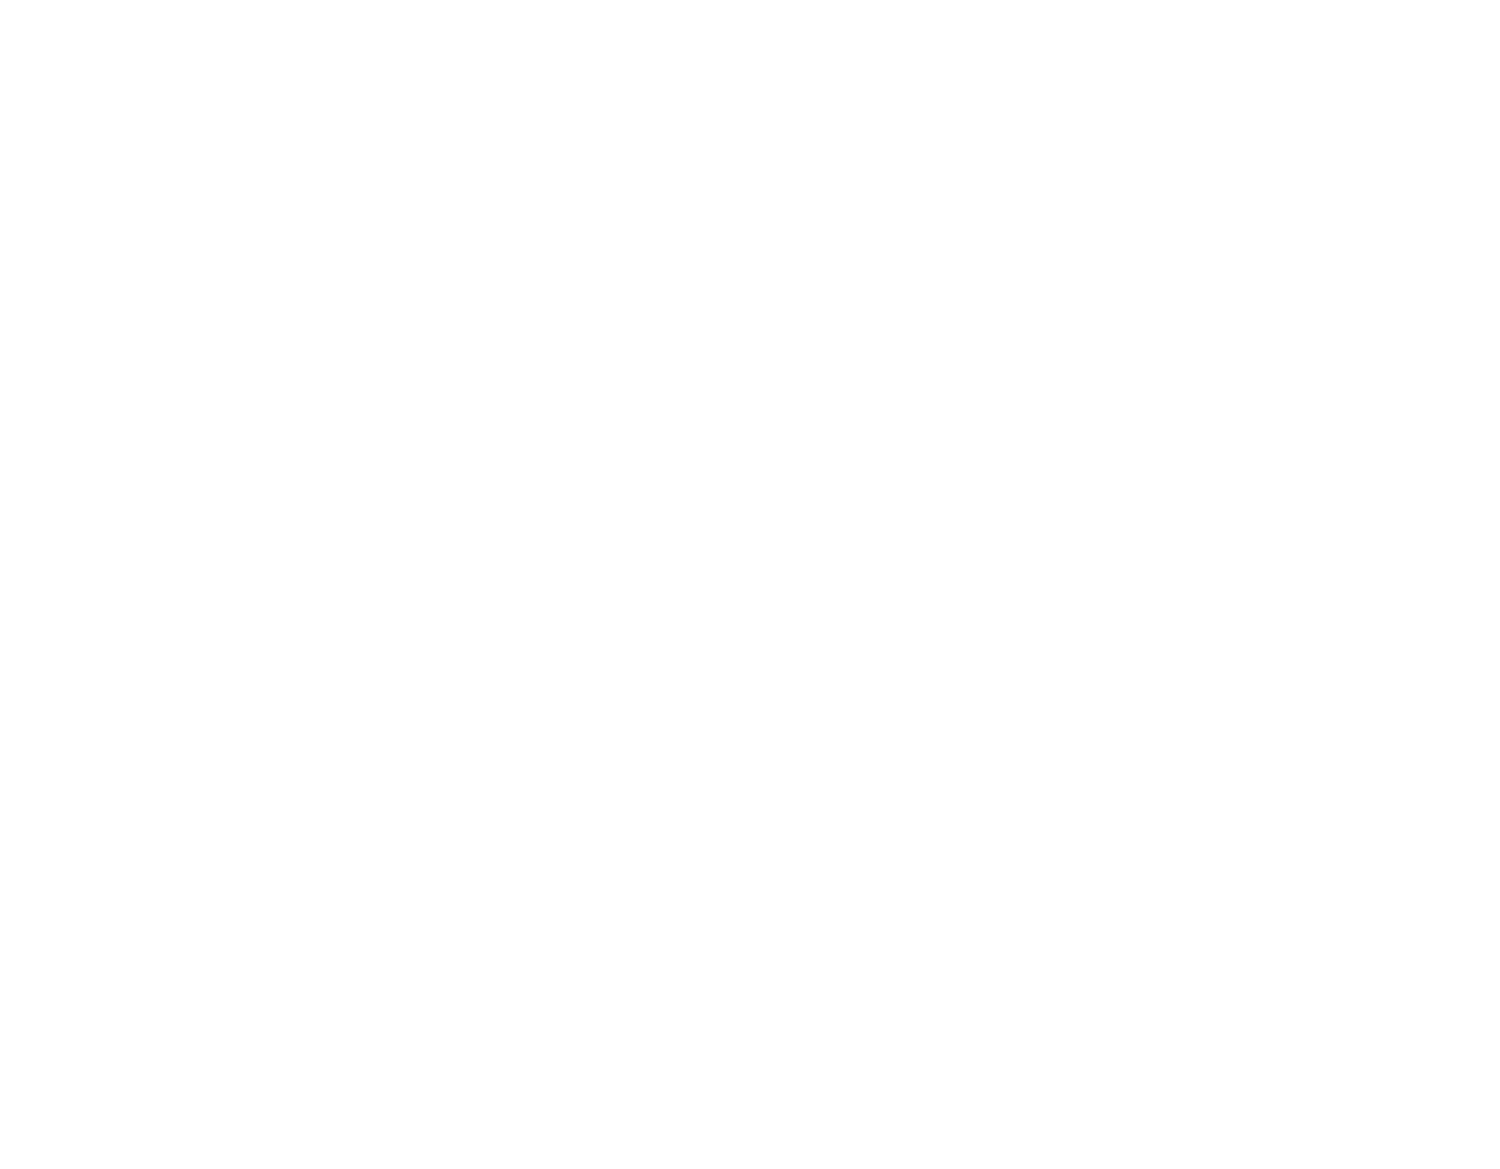 Wonkydata